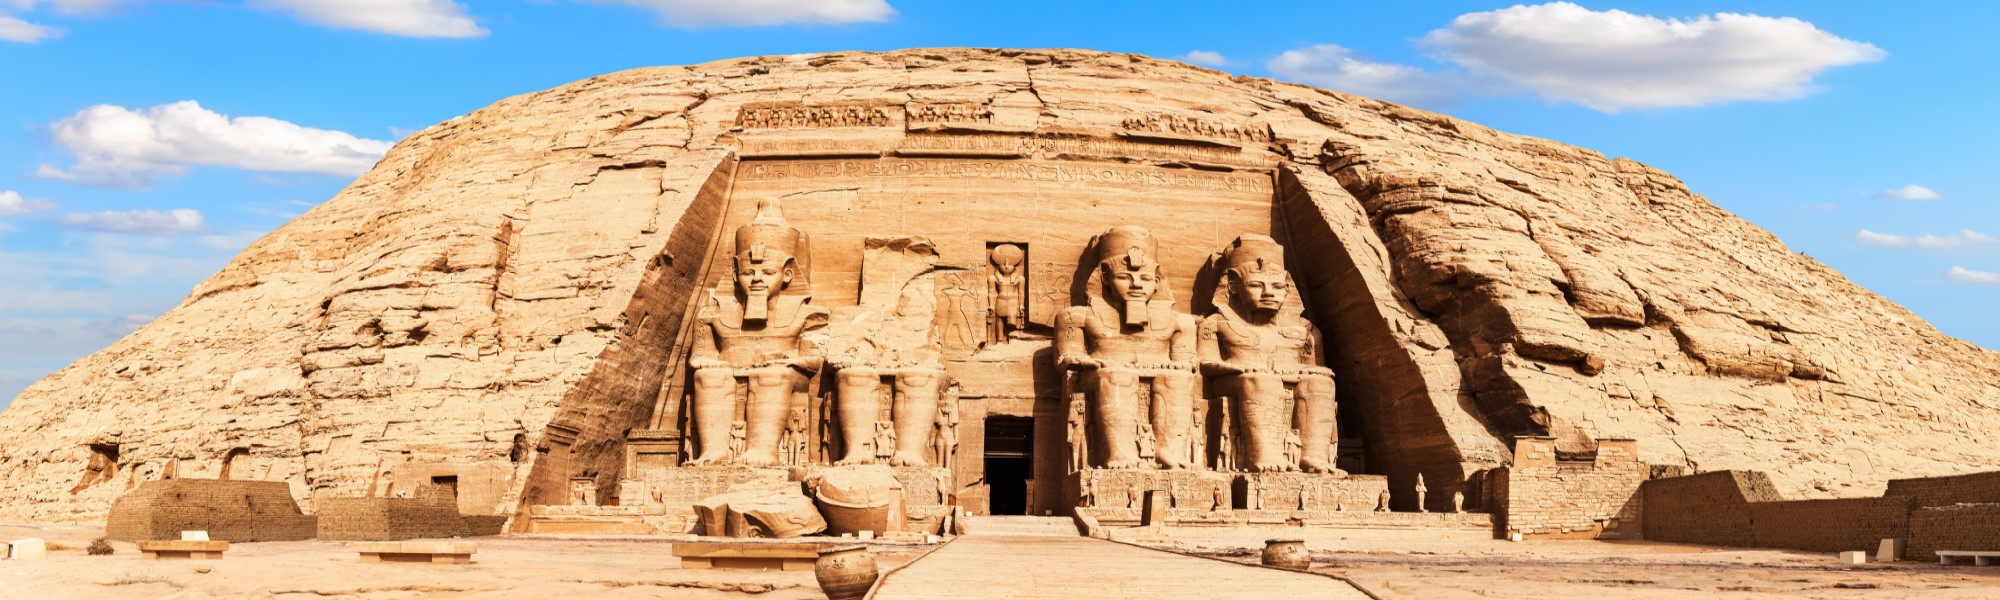 Egipte Abu Simbel